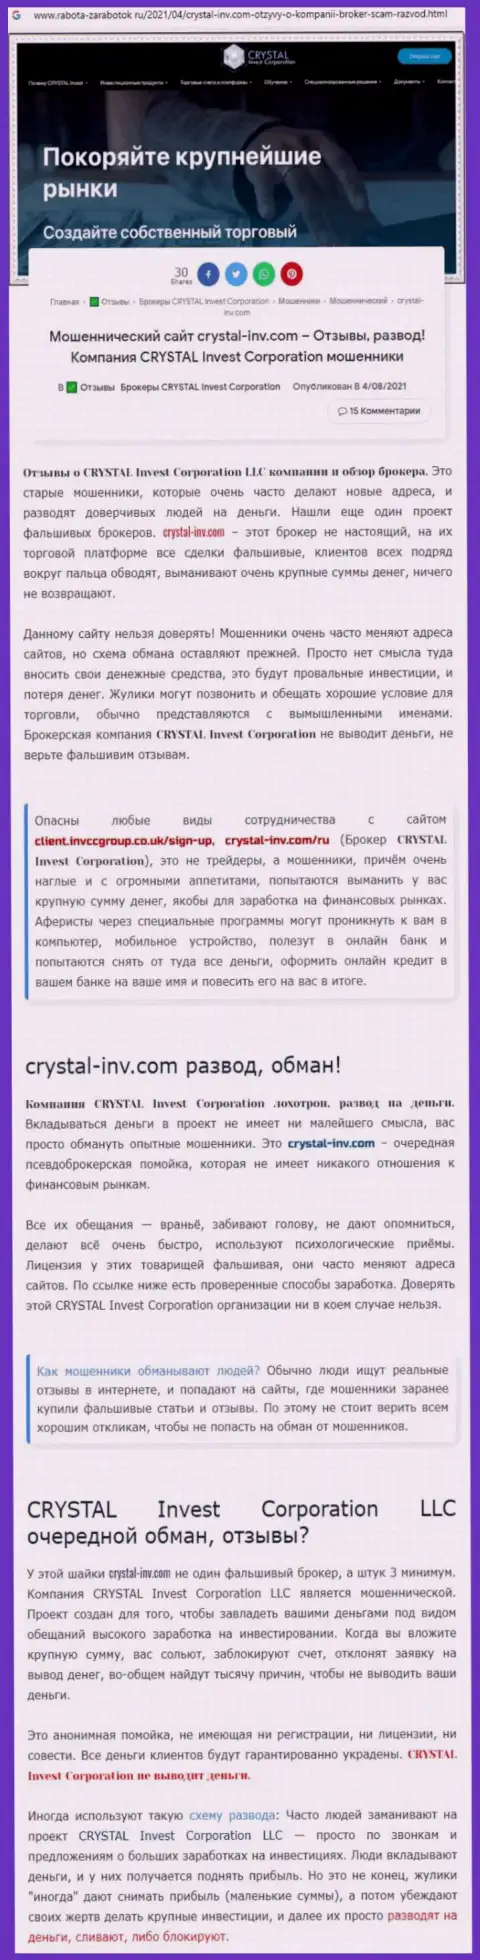 Материал, разоблачающий компанию Crystal Inv, который взят с сайта с обзорами противозаконных действий различных контор